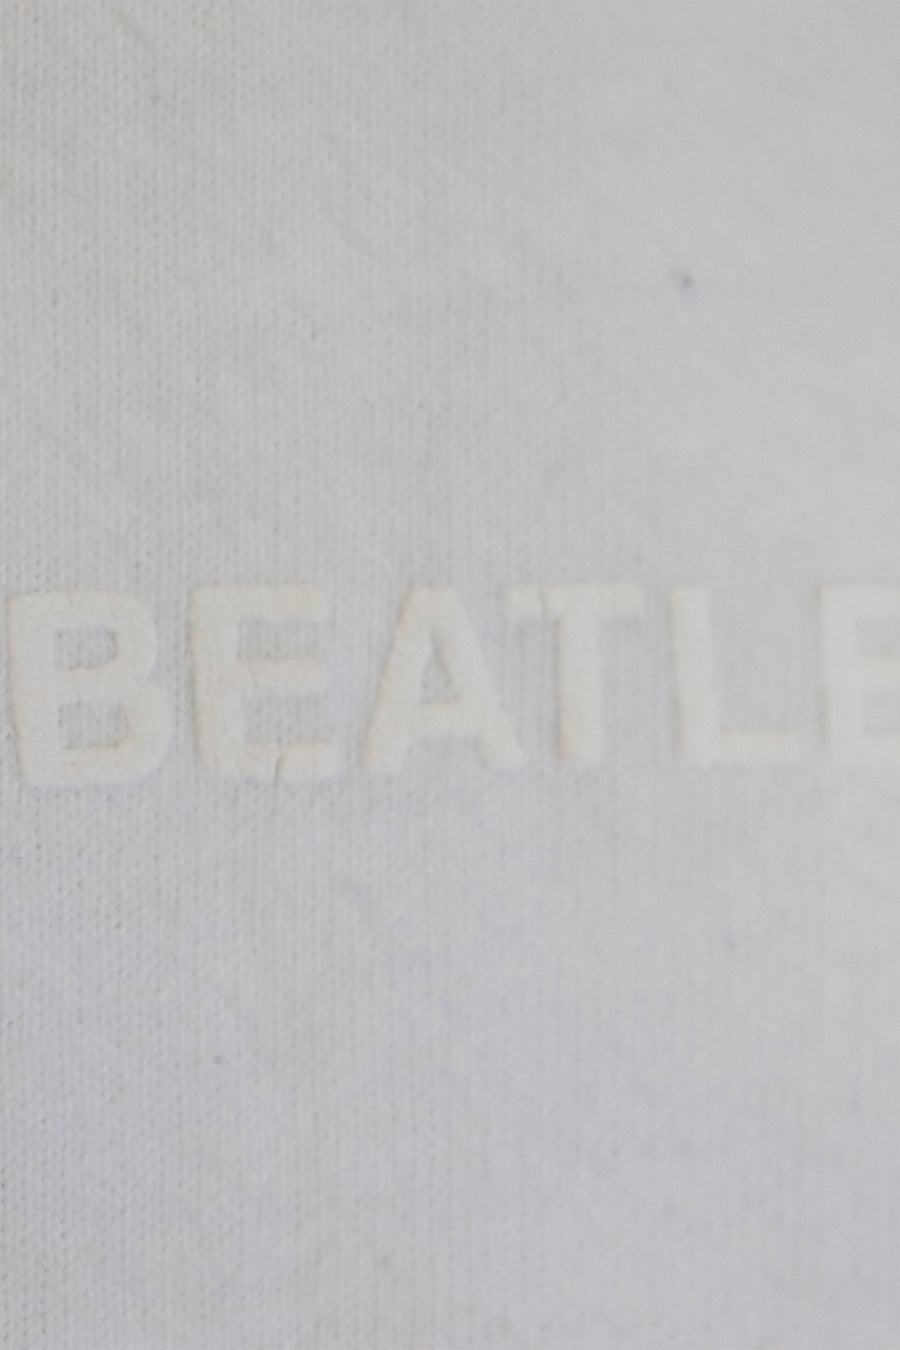 Vintage 1999 The Beatles Plain Front T Shirt Sz XL